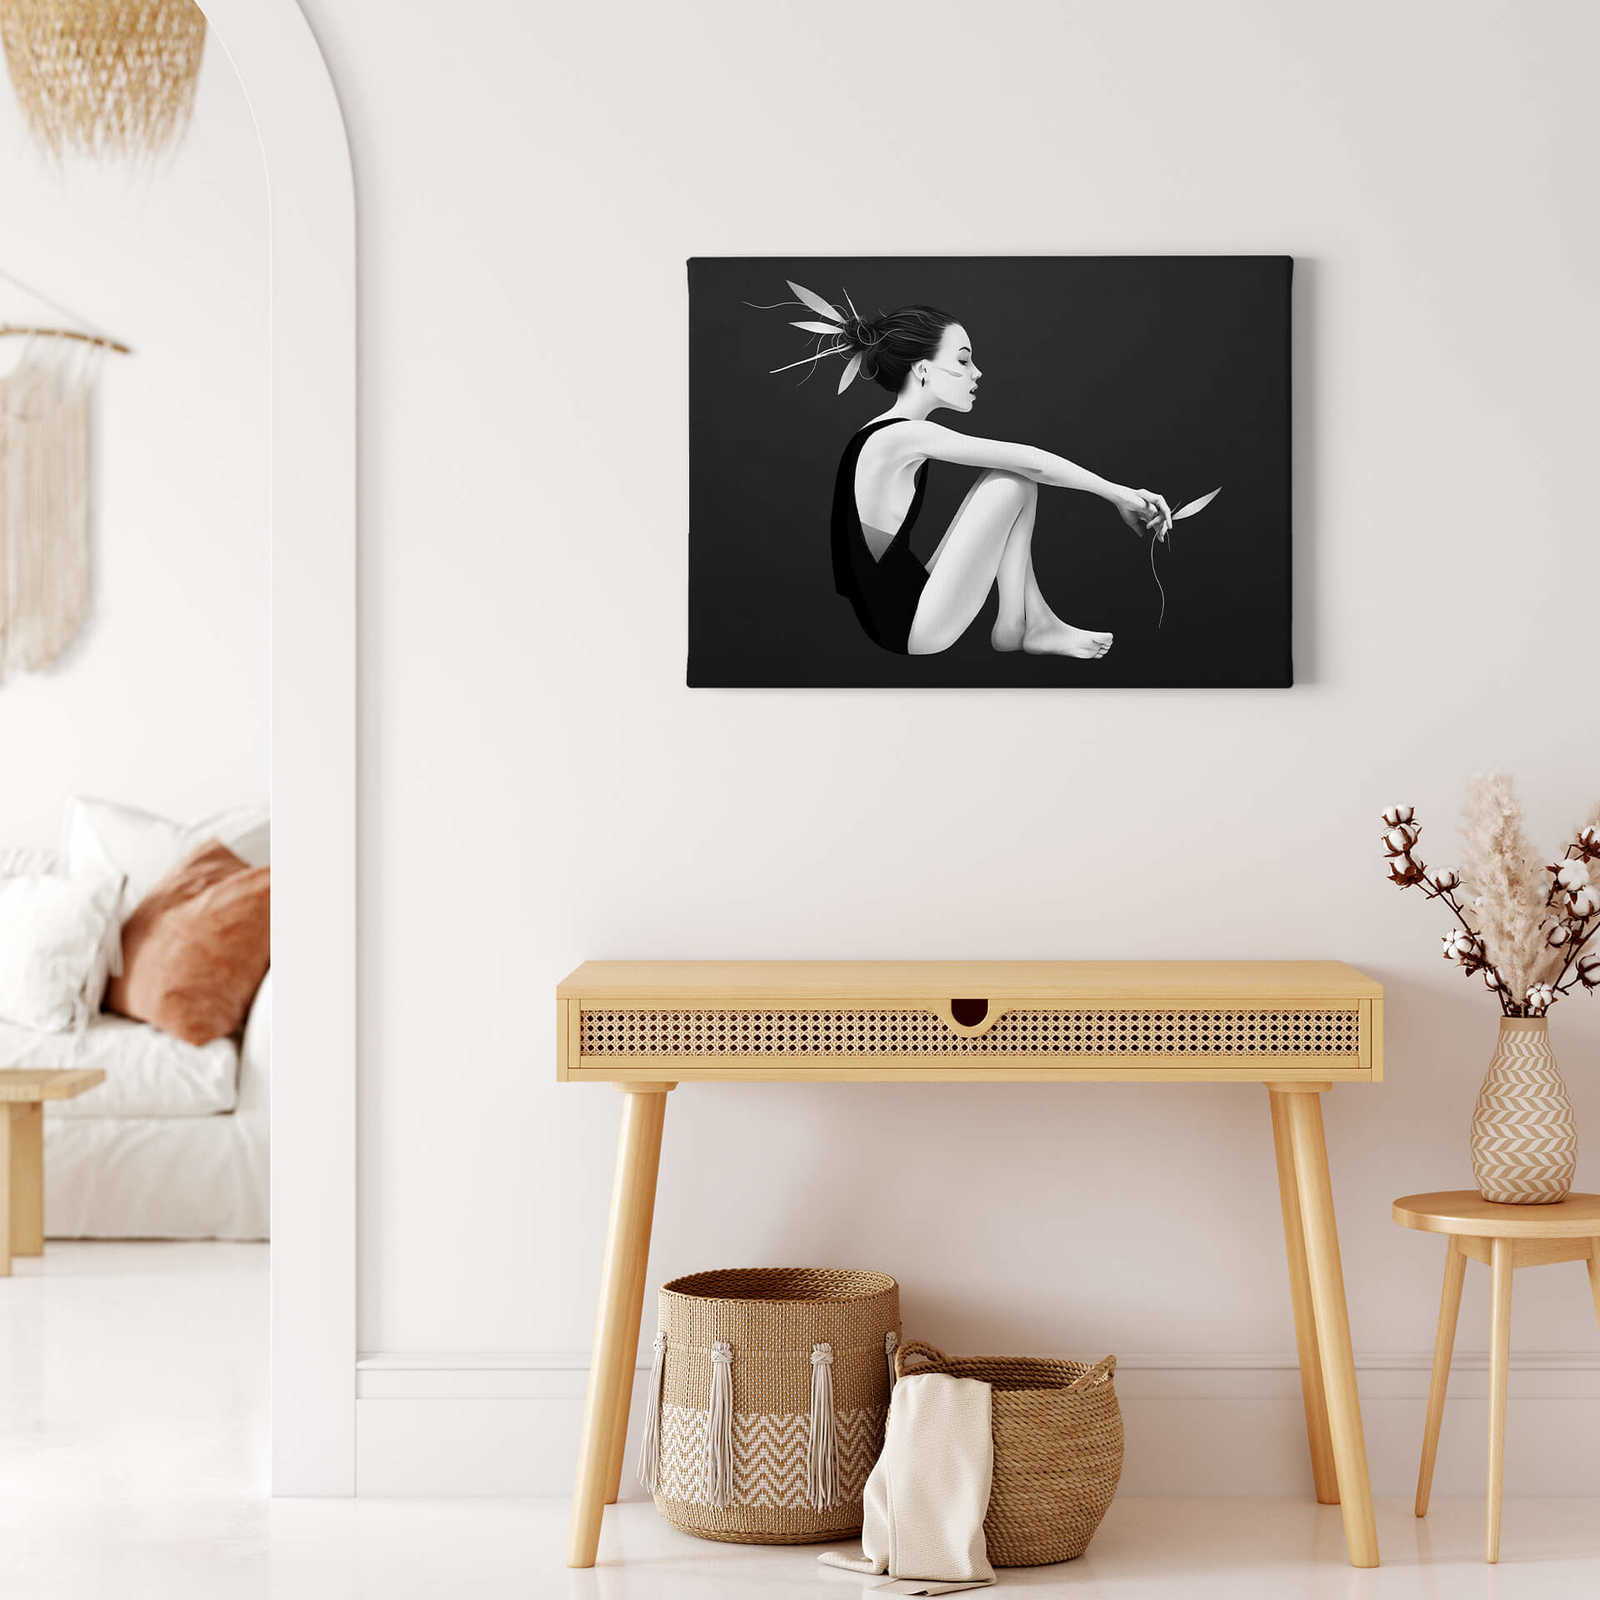             Schwarz-Weiß Leinwandbild "Skyling" mit Frauenfigur – 0,70 m x 0,50 m
        